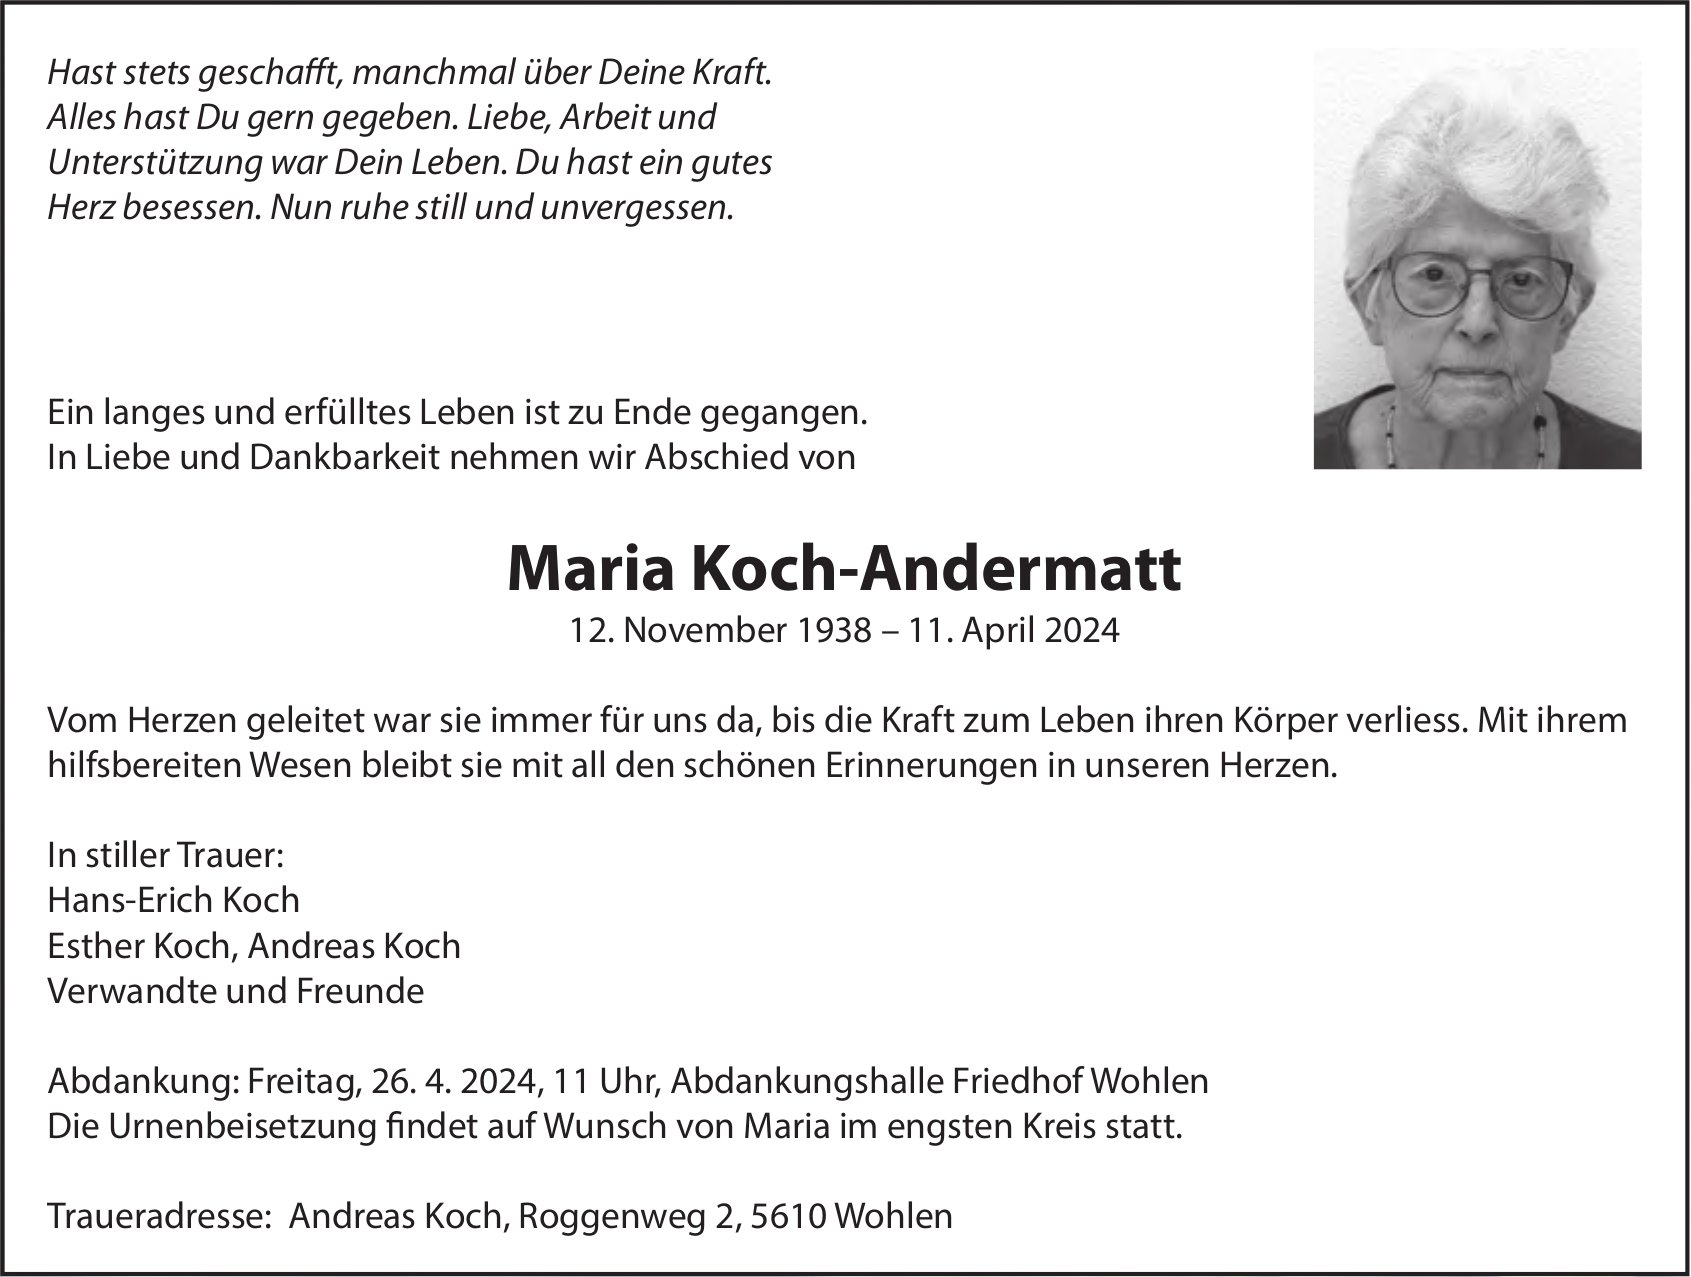 Maria Koch-Andermatt, April 2024 / TA